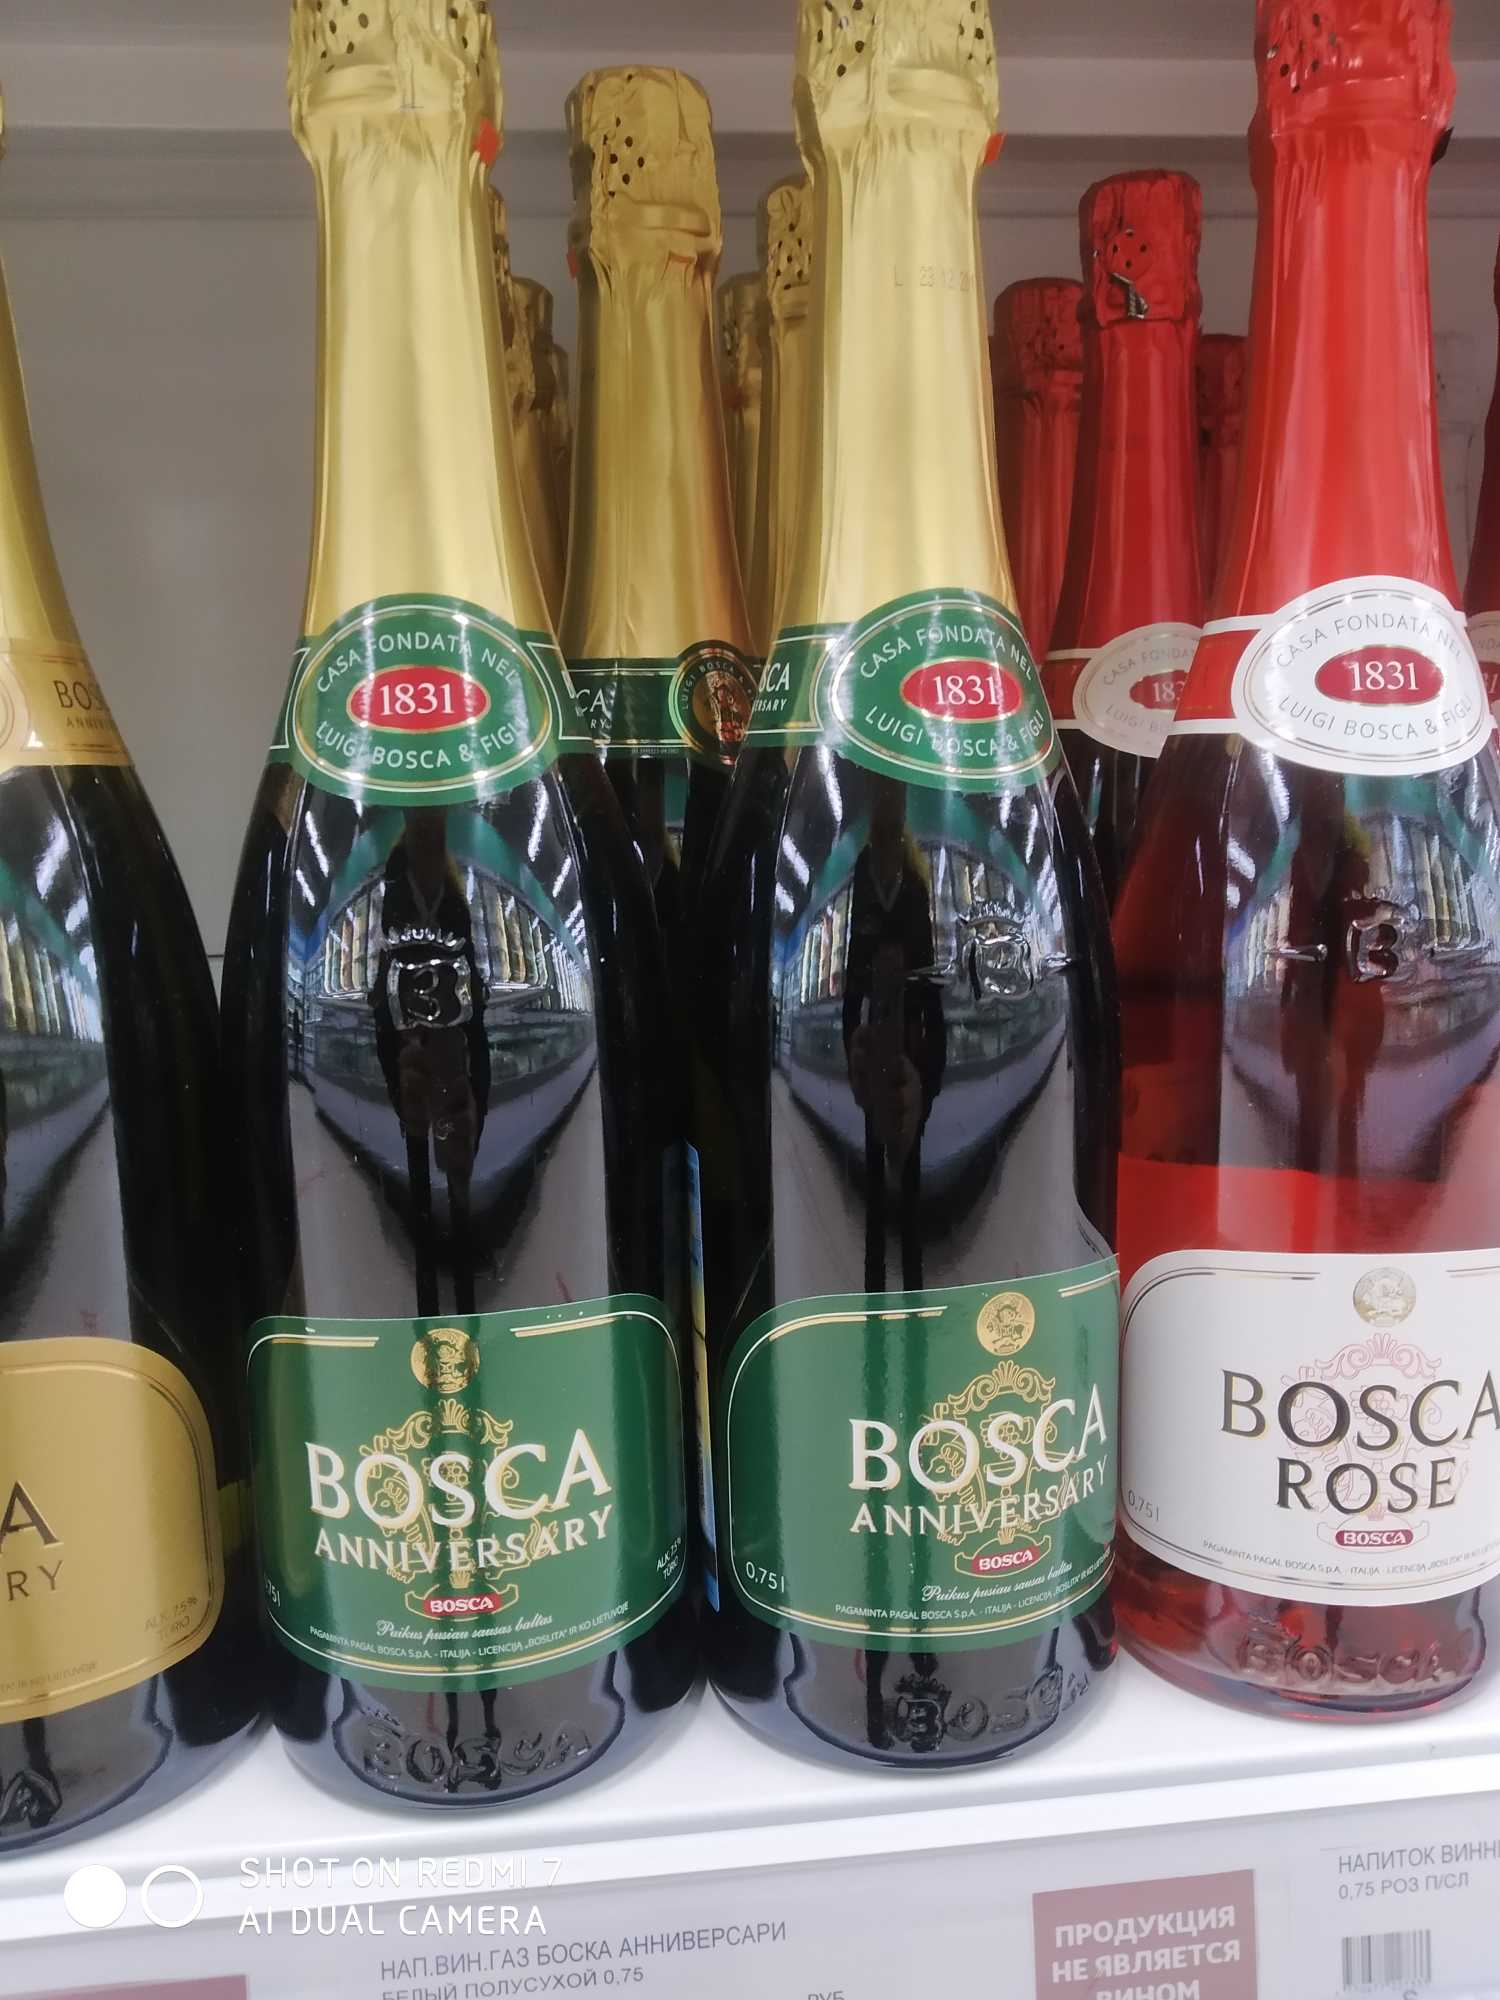 Боско красное шампанское. Винный напиток Bosca Боско. Боско шампанское Анниверсари. Напиток винный Bosca Анниверсари. Винный напиток Bosca Rose 0.75.